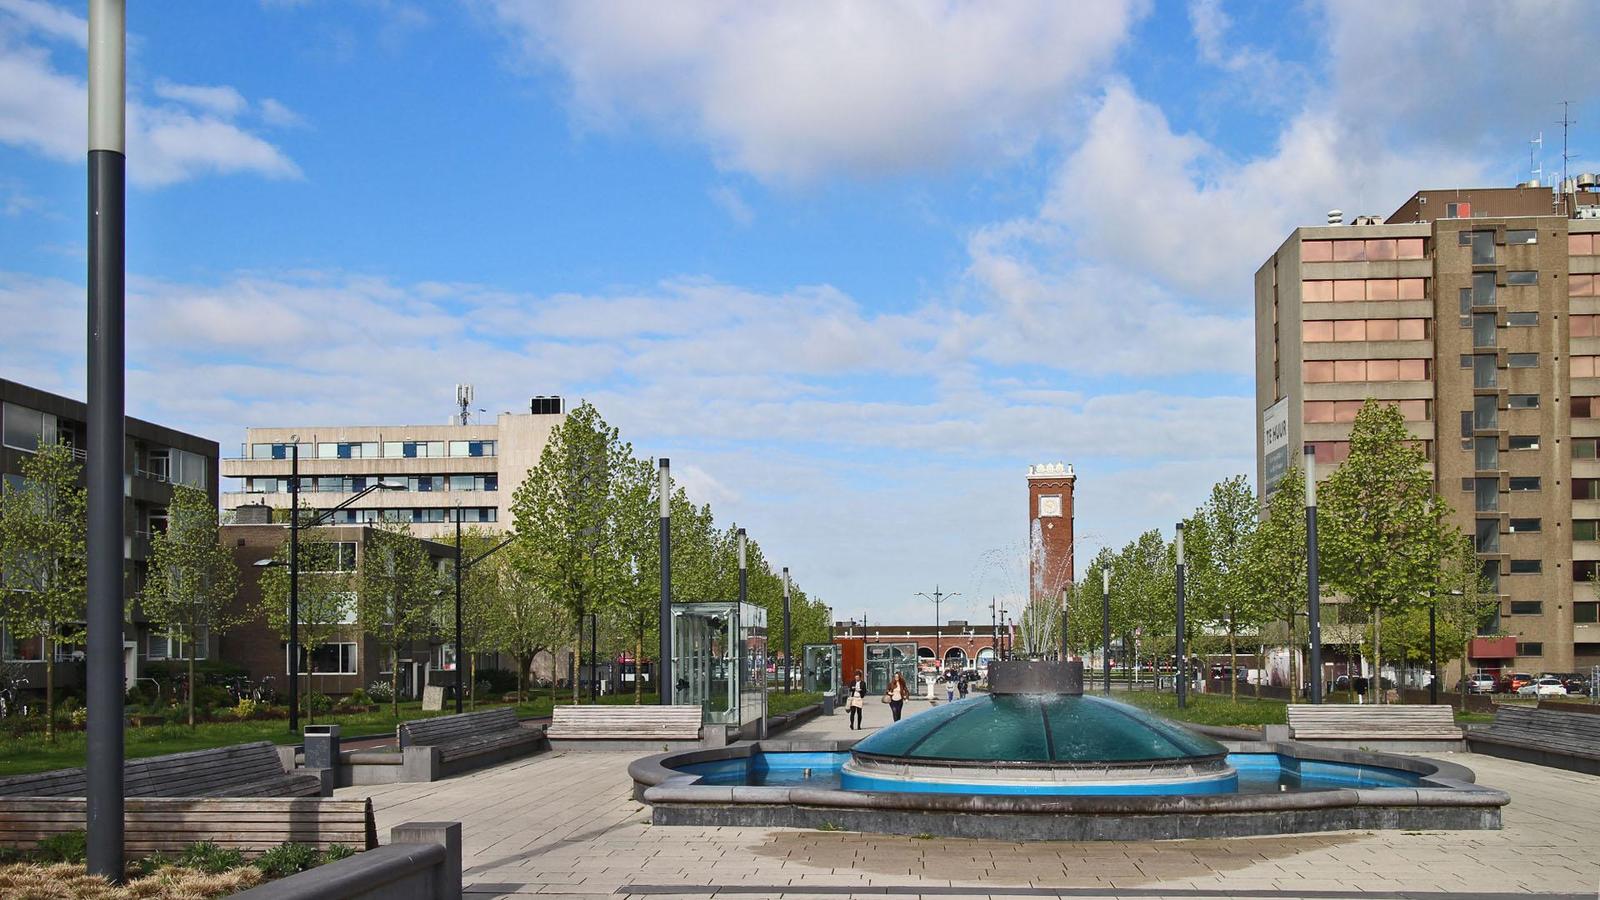 Неймеген, Нидерланды. Nijmegen, Netherlands